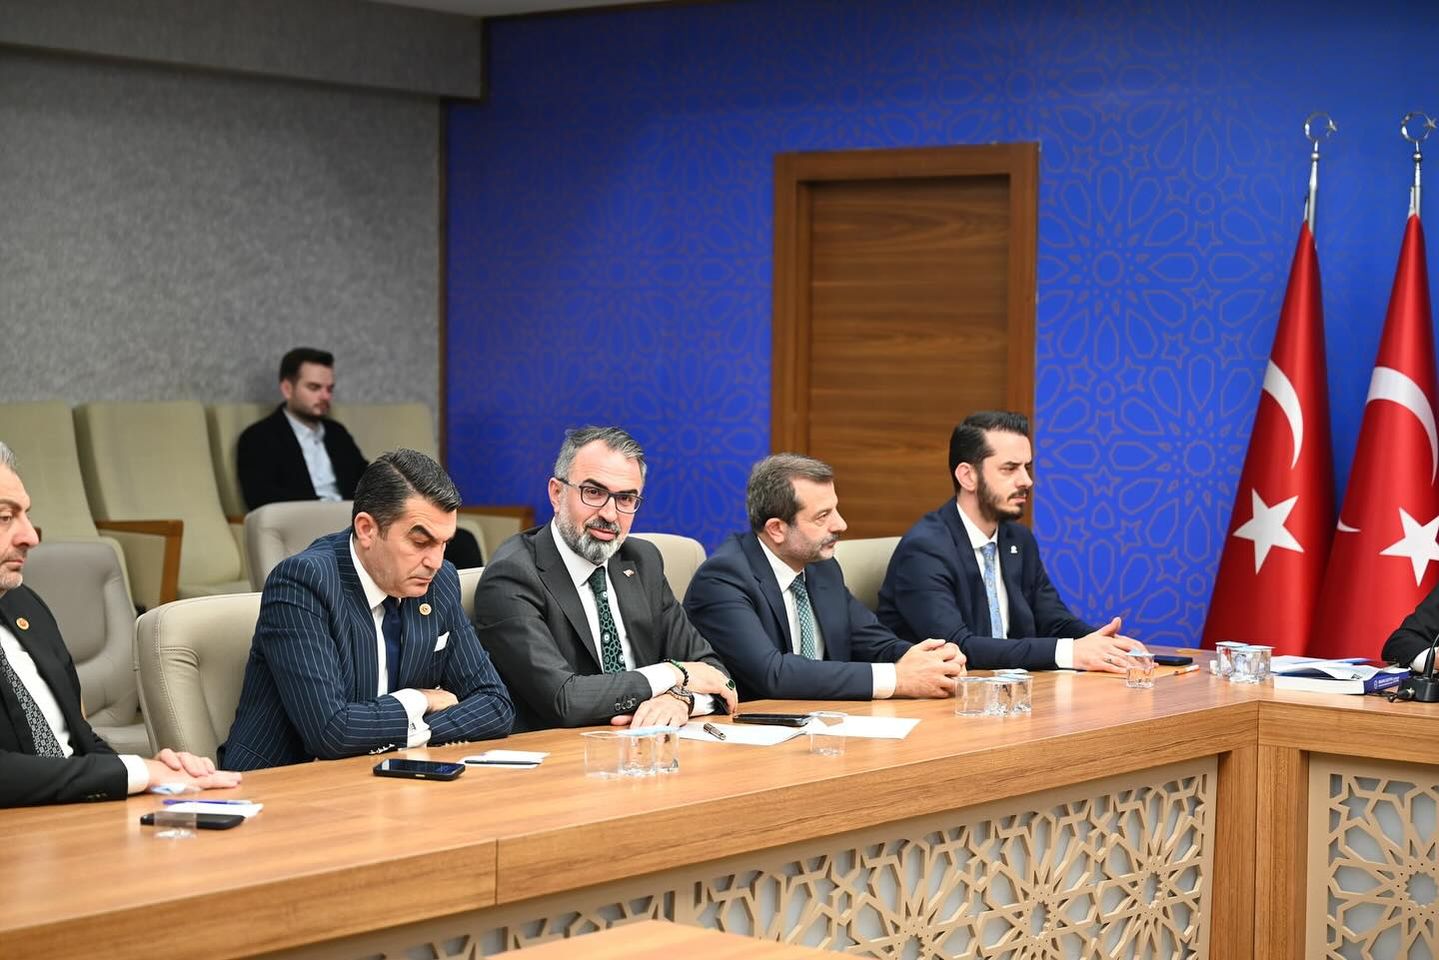 İlçe Belediye Başkanı, Büyükşehir Belediye Meclis Grup Toplantısı'na katıldı.